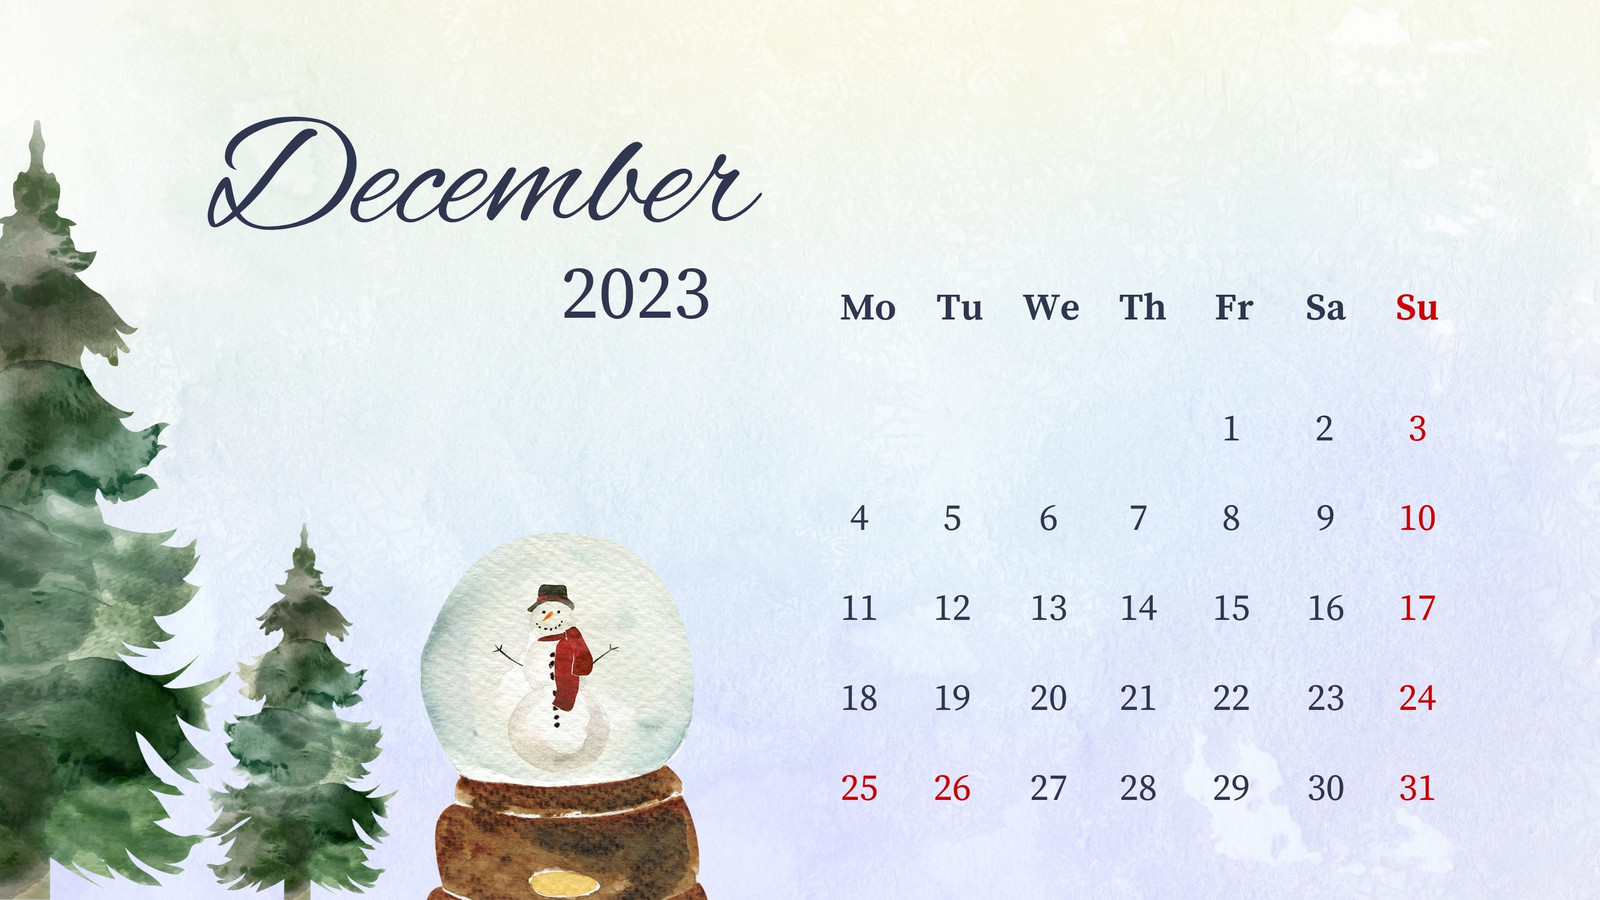 December 2023 Calendar Wallpapers - Top Free December 2023 Calendar ...